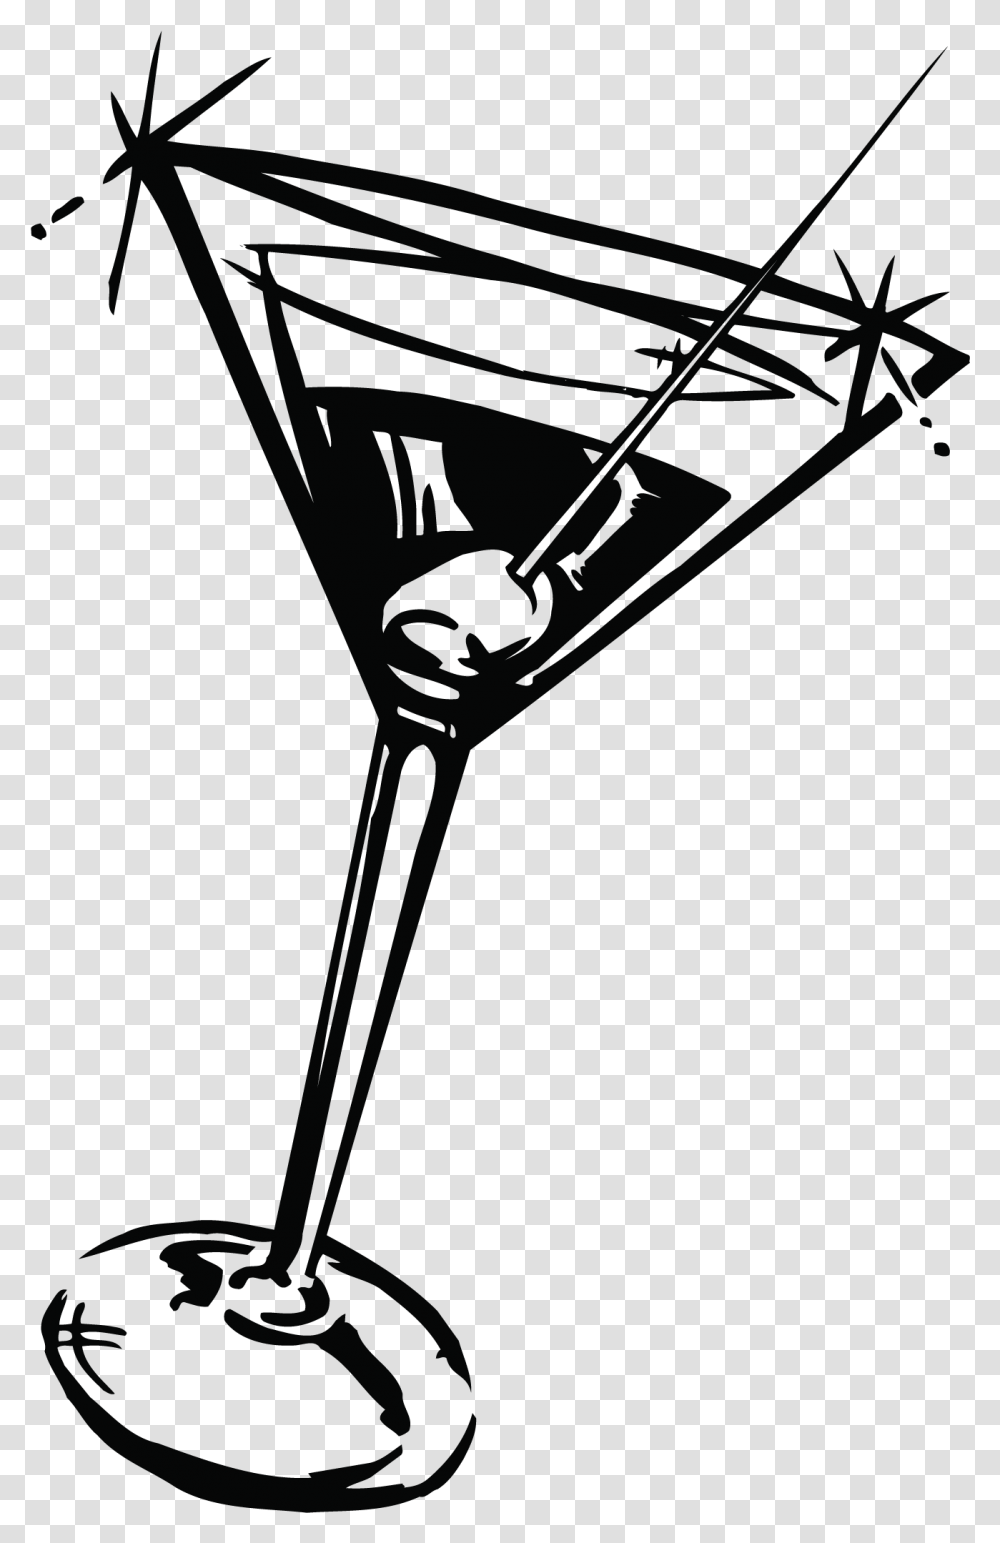 Background Martini, Cocktail, Alcohol, Beverage, Drink Transparent Png